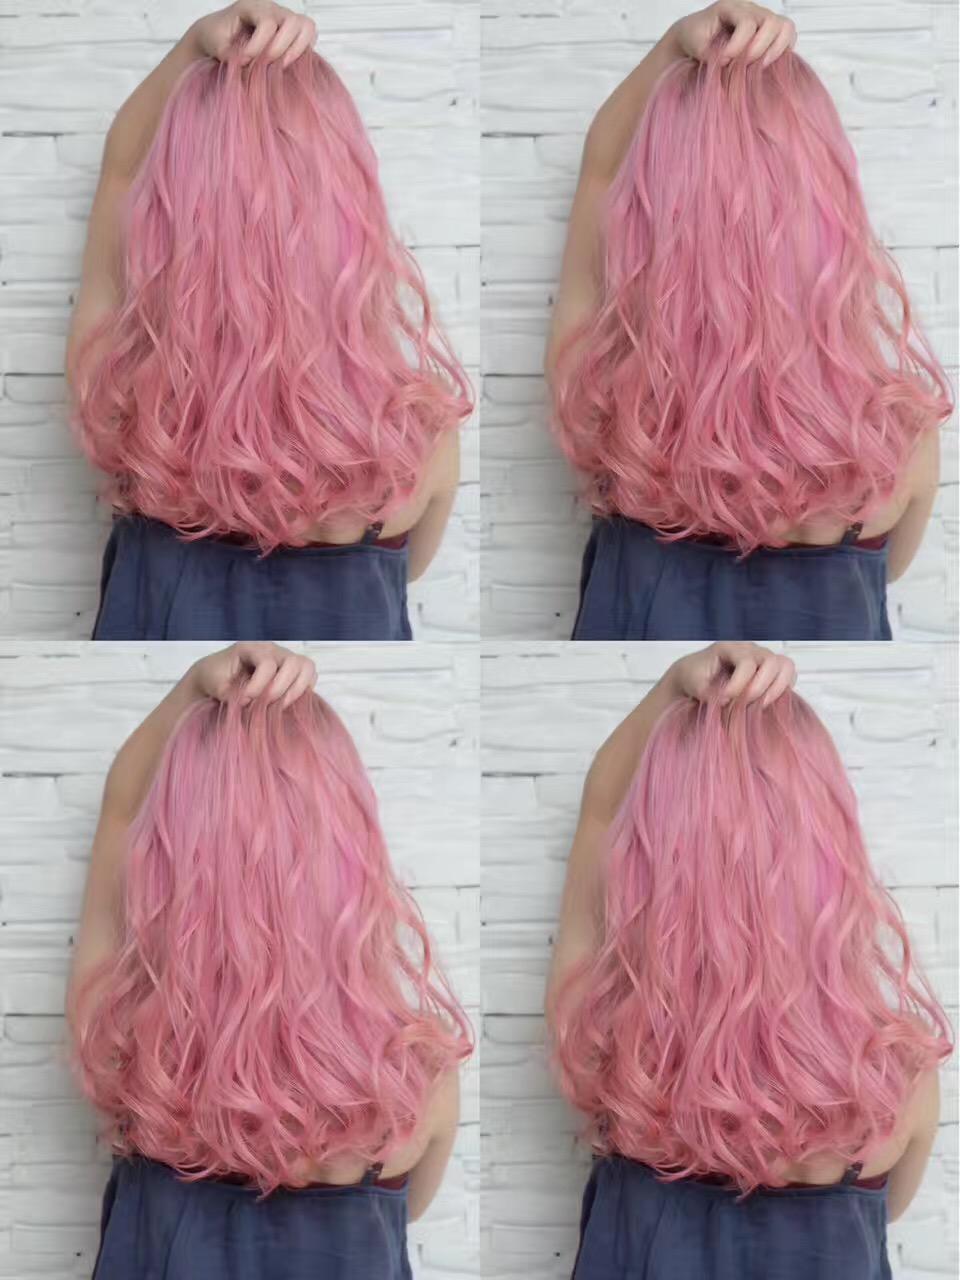 染粉色头发是种怎样的体验?